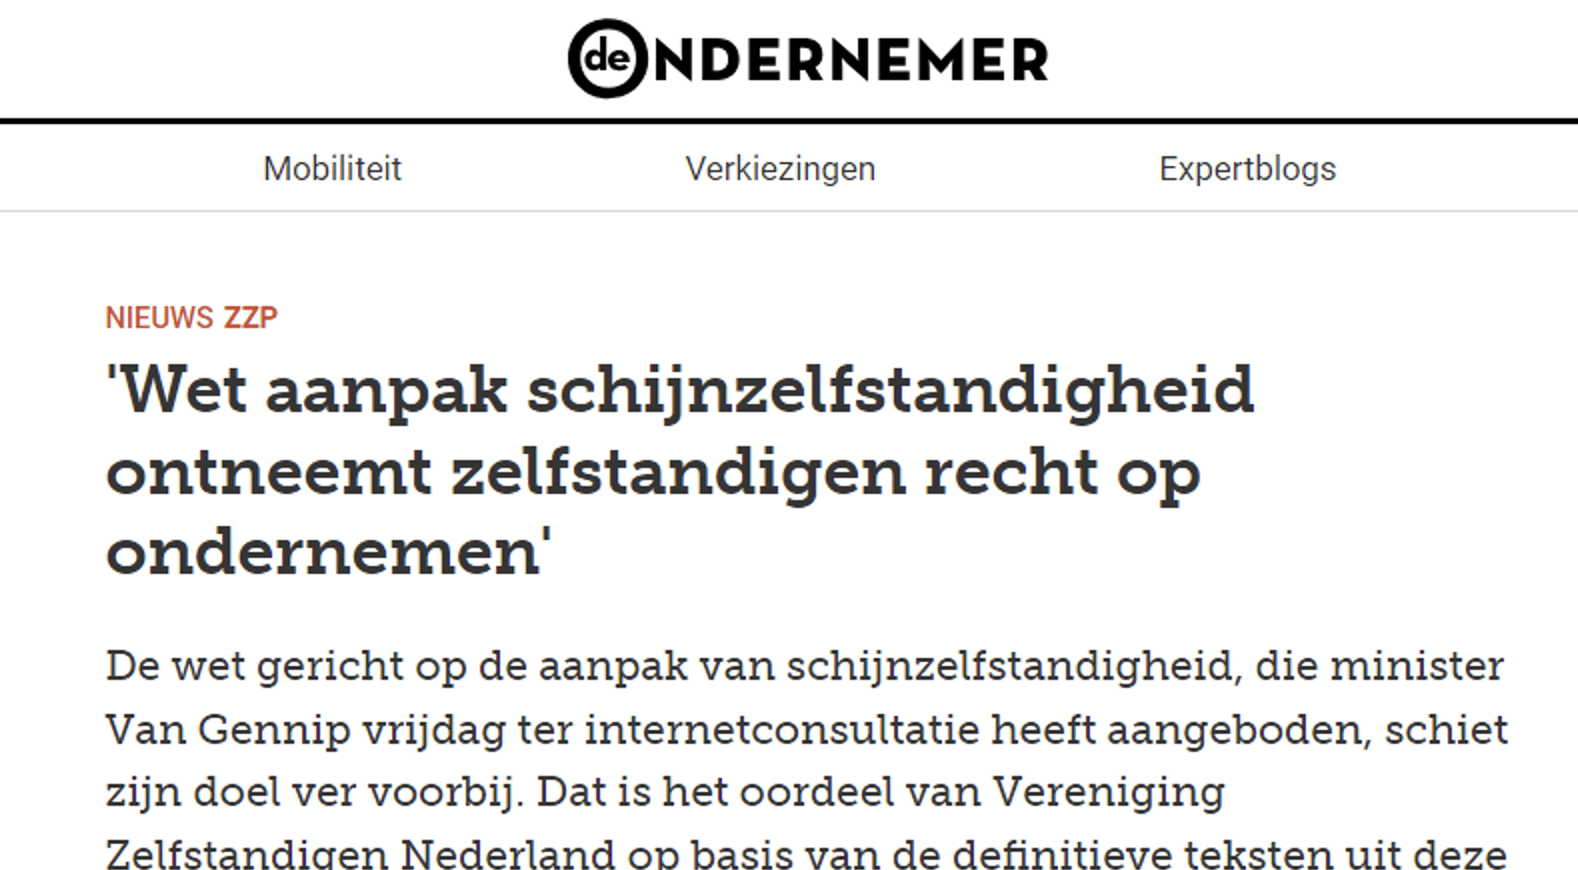 ‘Wet aanpak schijnzelfstandigheid ontneemt het recht op ondernemen’ – VZN op DeOndernemer.nl